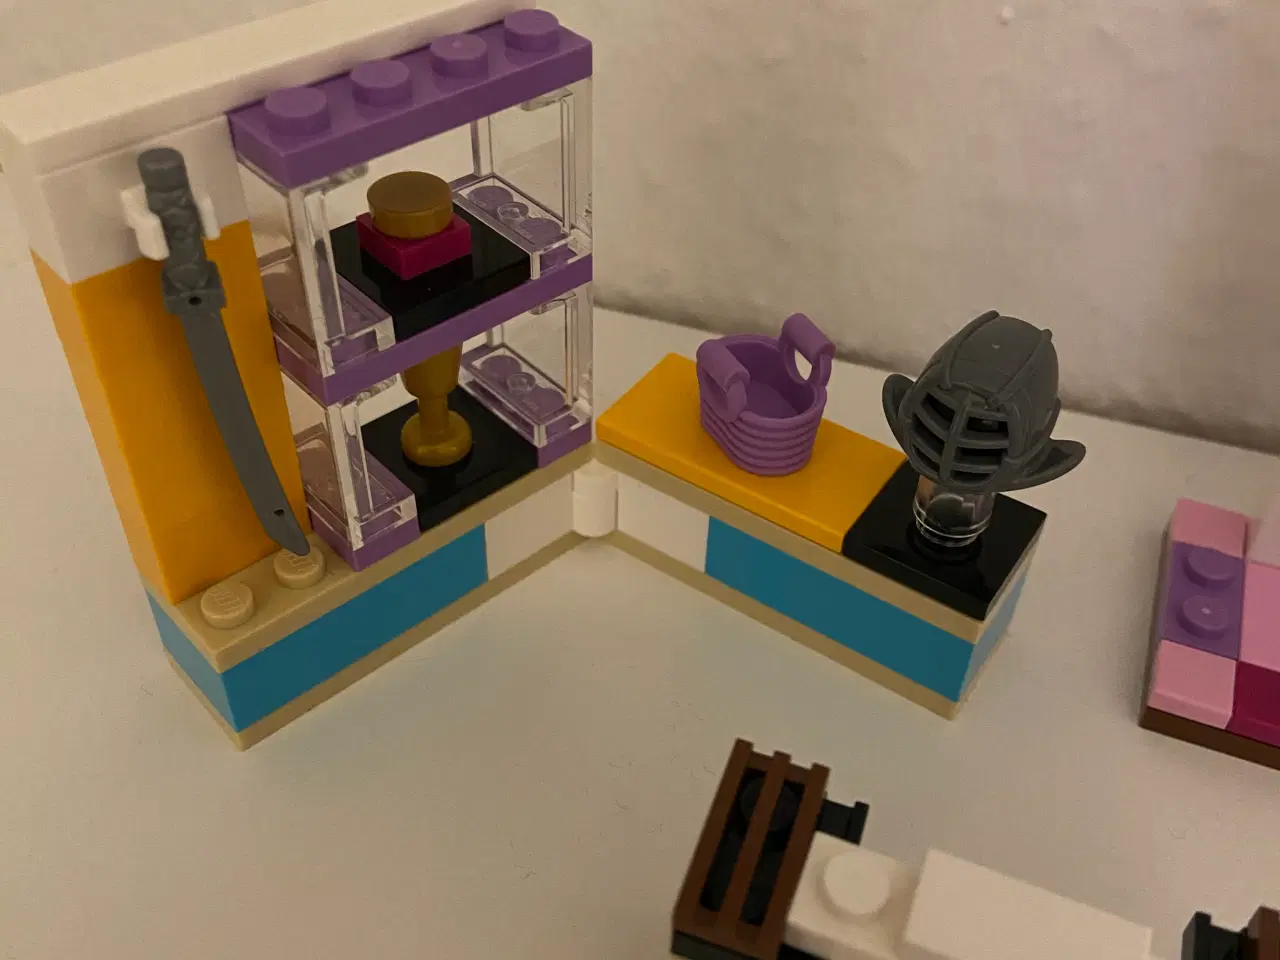 Billede 2 - Lego Friends